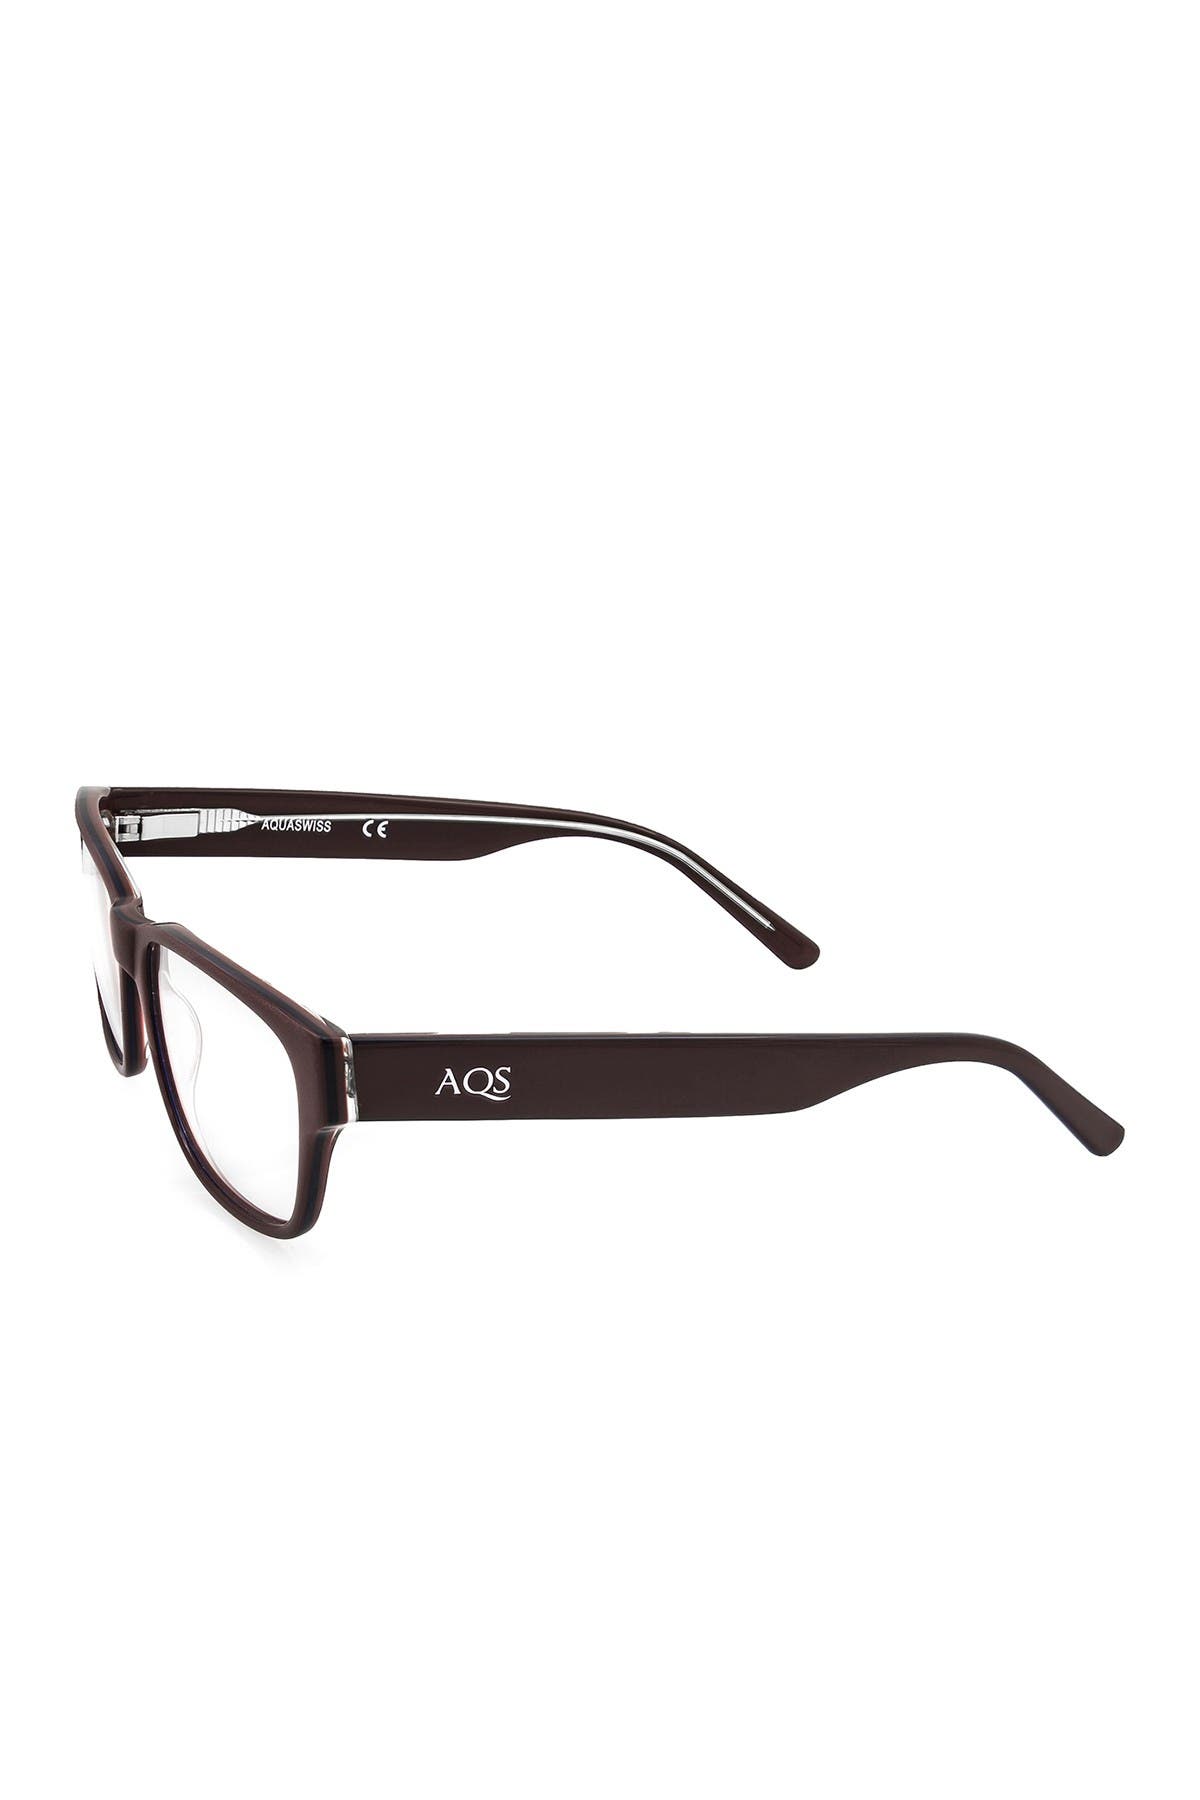 Aqs 54mm Dexter Rectangular Optical Glasses